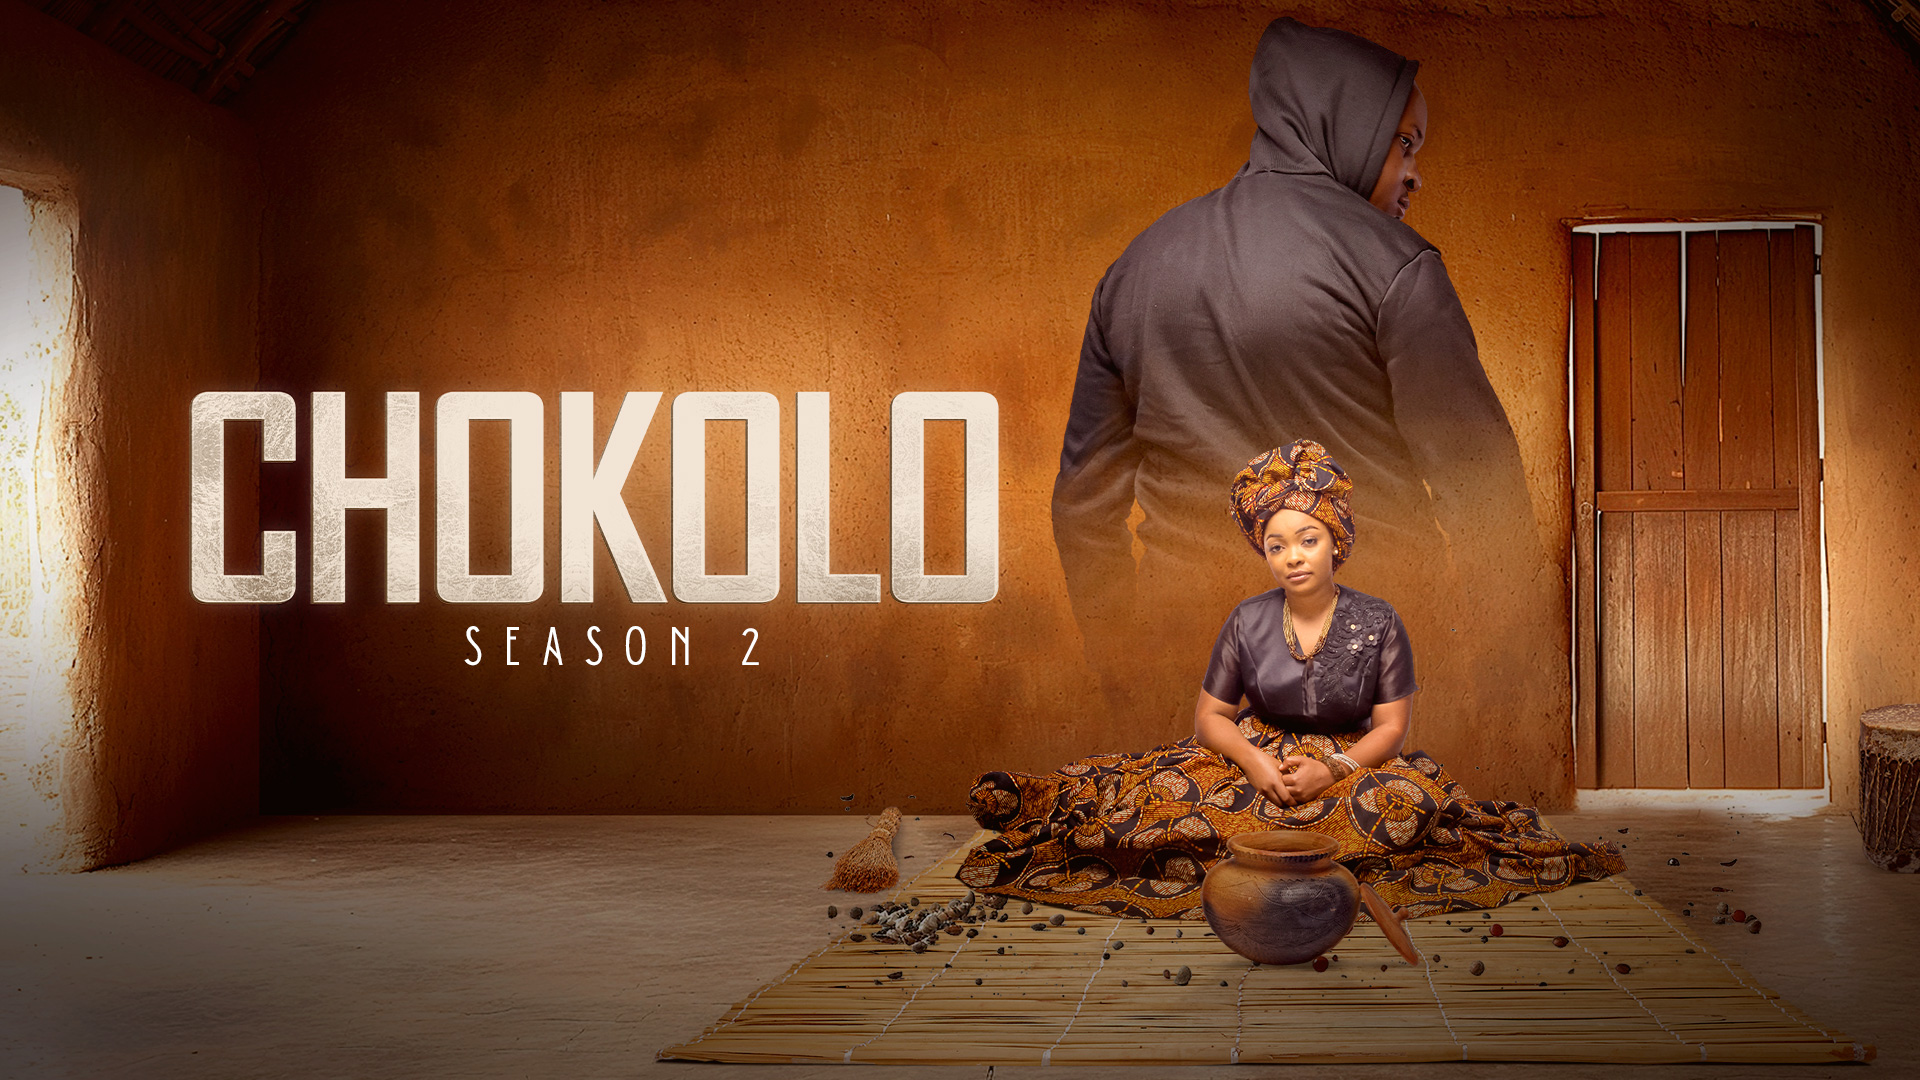 <p><strong>Chokolo season 2 on Zambezi Magic</strong></p>